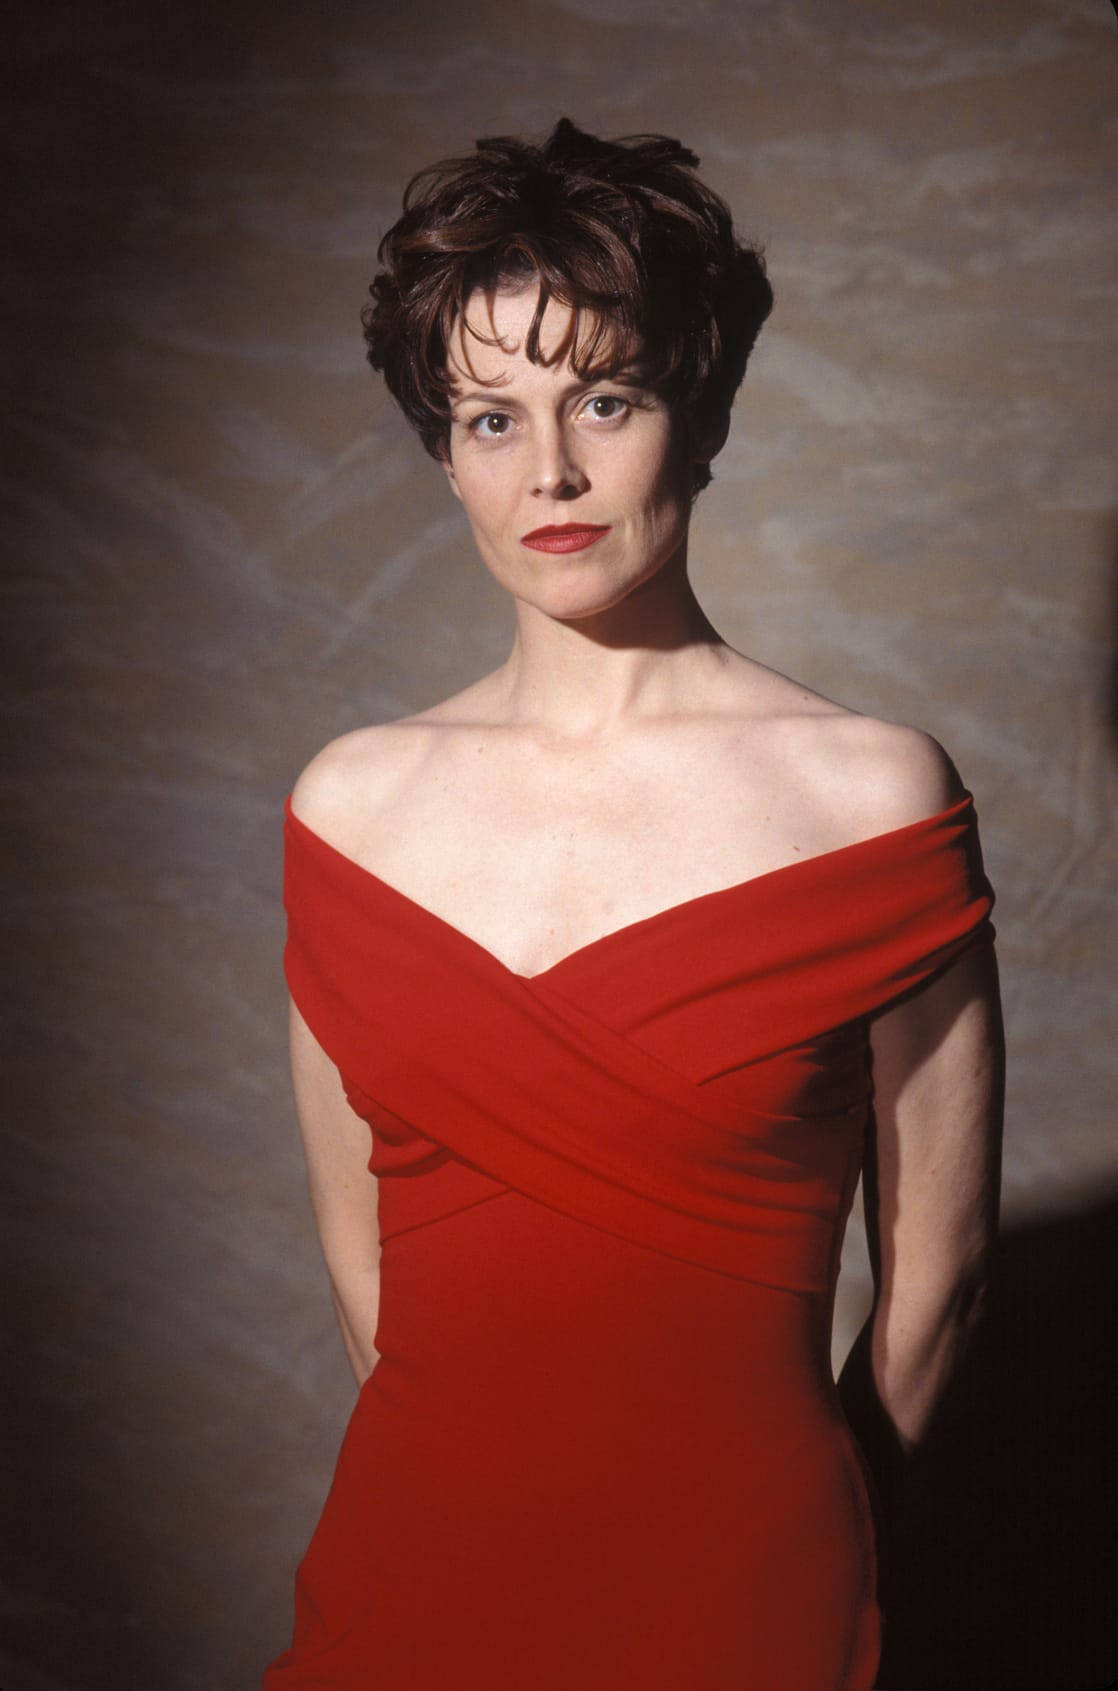 Sigourney Weaver Daring Red Dress Wallpaper